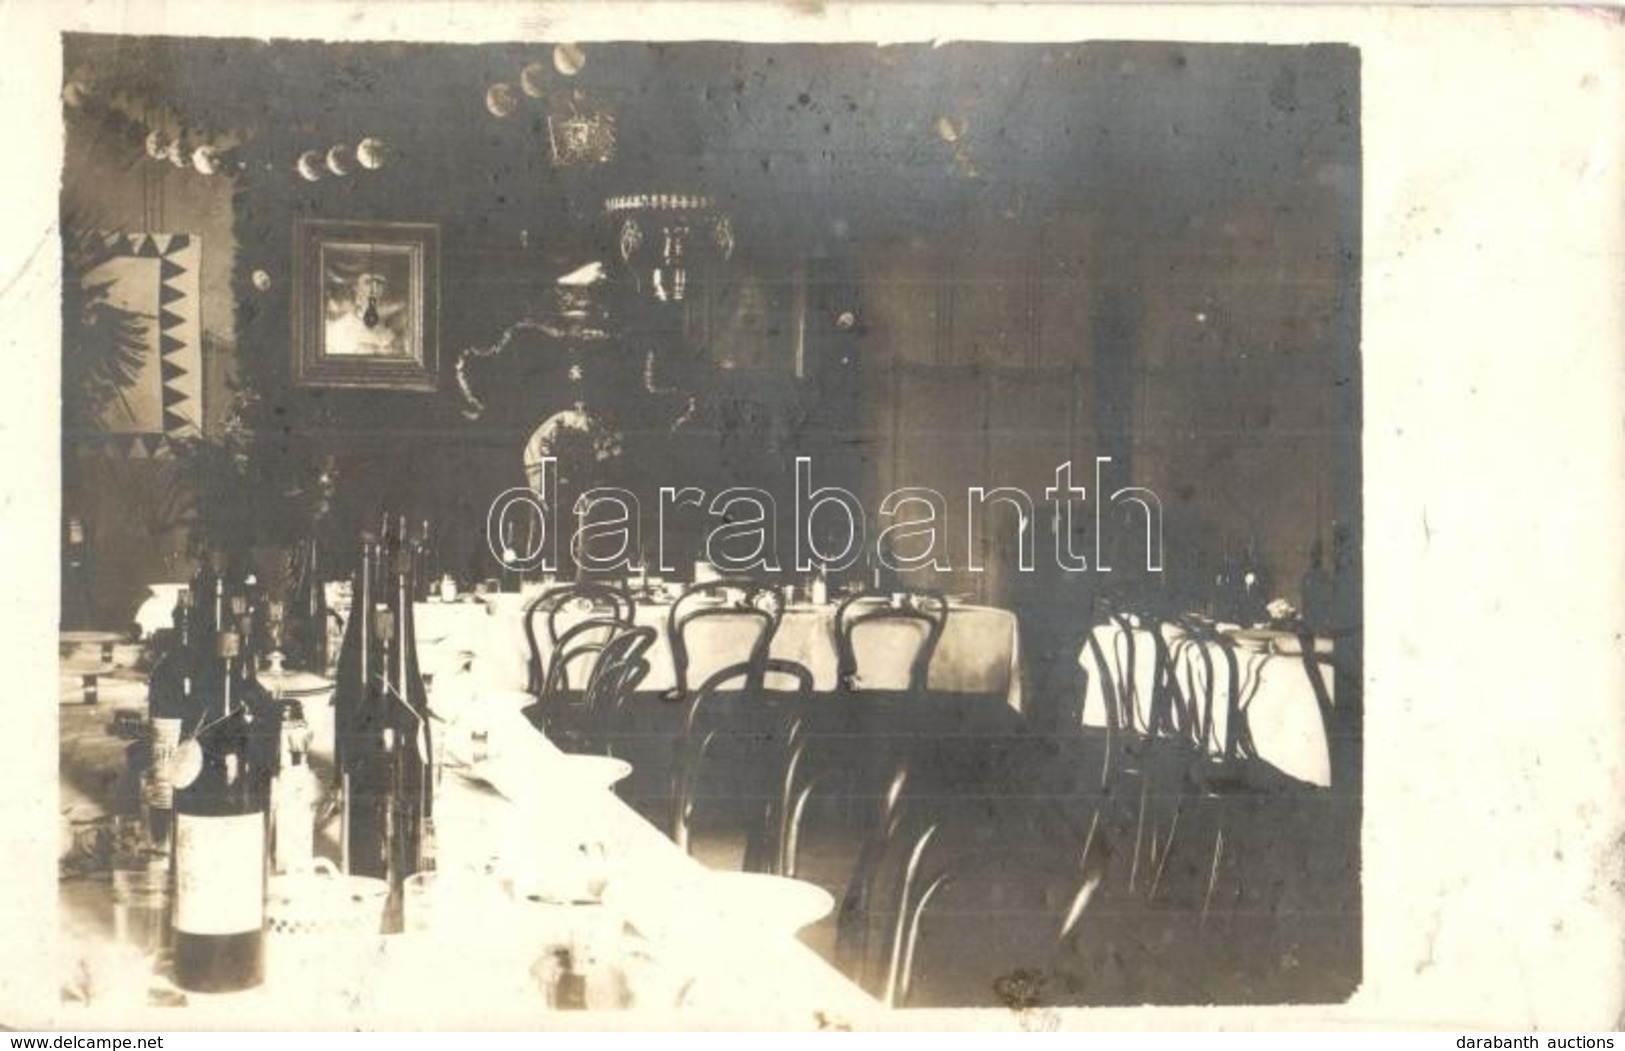 * T3 1915 Tiszti étkező Feldíszítve Karácsonyra és újévre / WWI K.u.k. Military Officers' Dining Hall Interior, Decorate - Unclassified